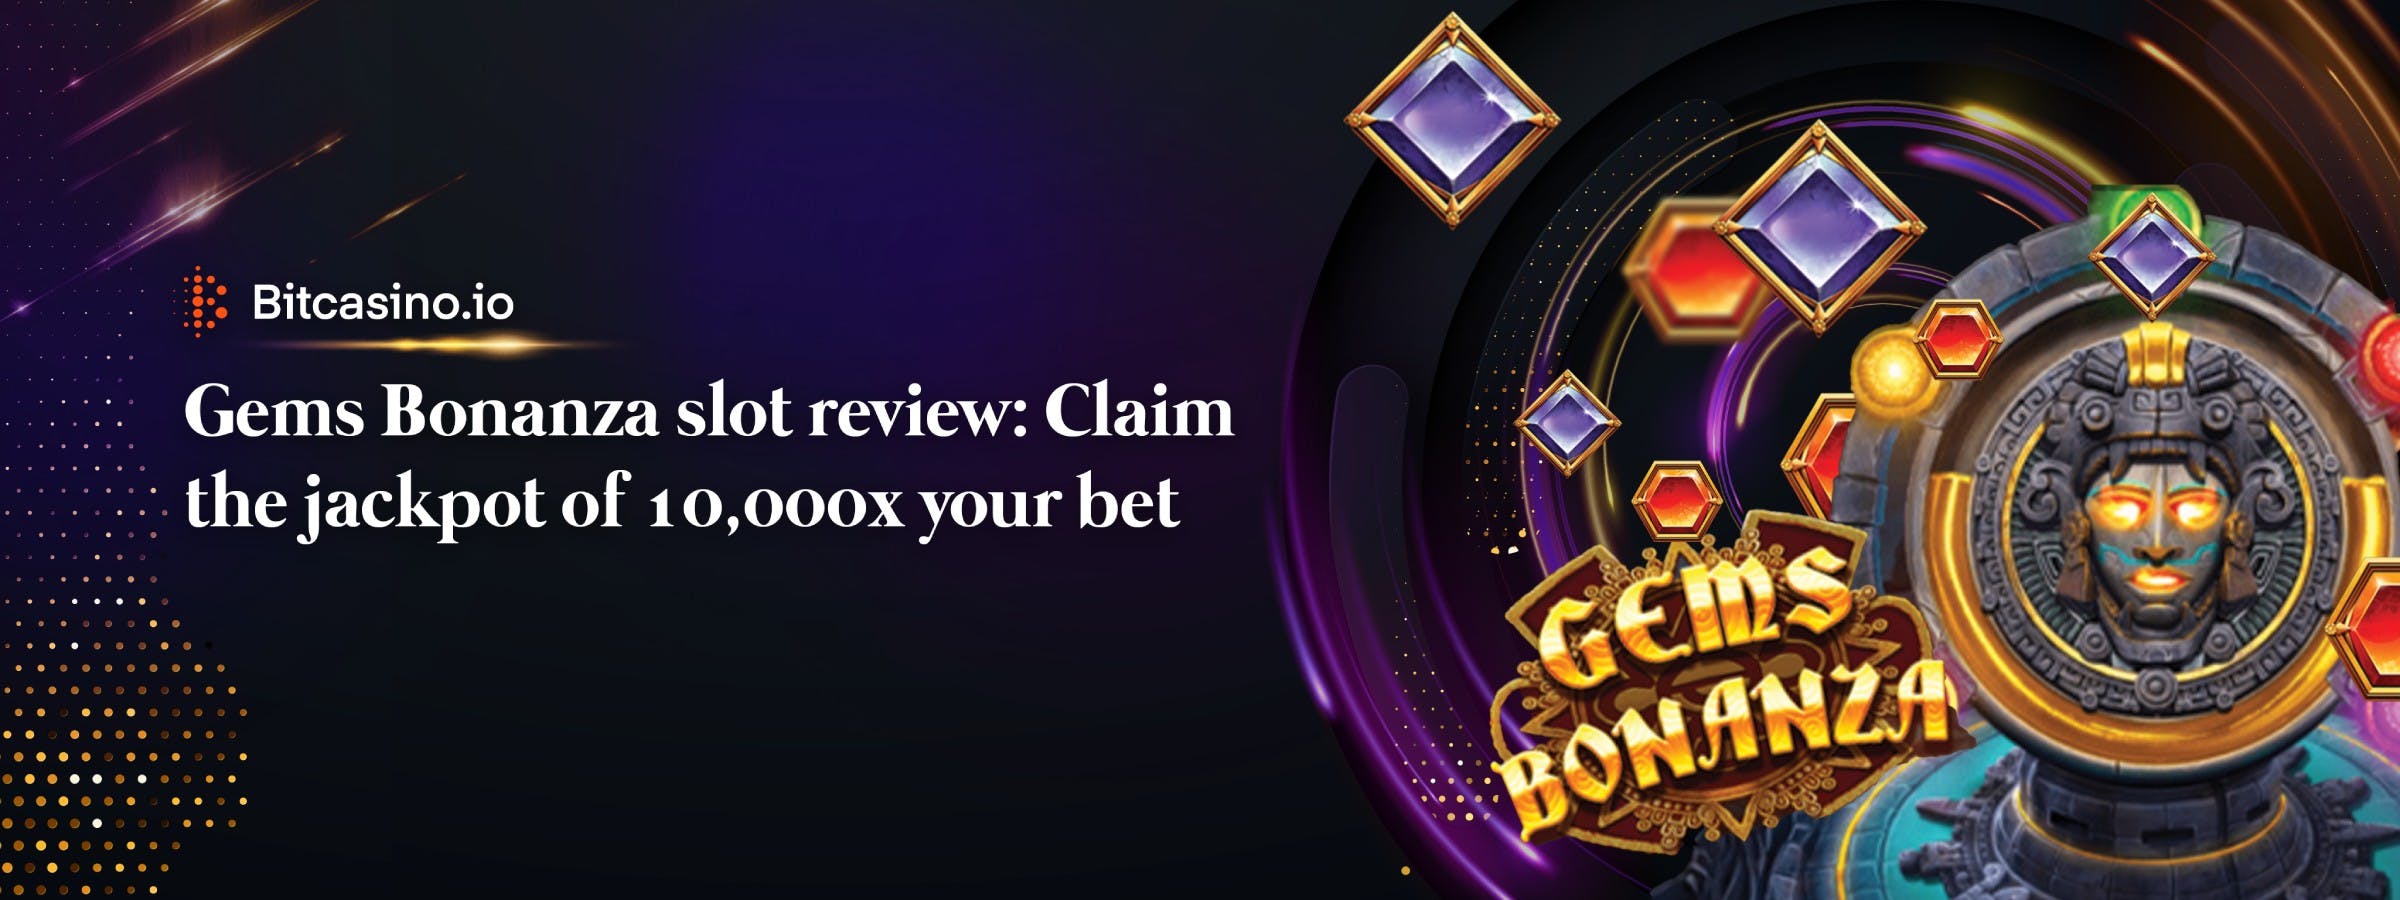 Gems Bonanza análise do jogo de slot: Reclame o jackpot de 10,000x a sua aposta